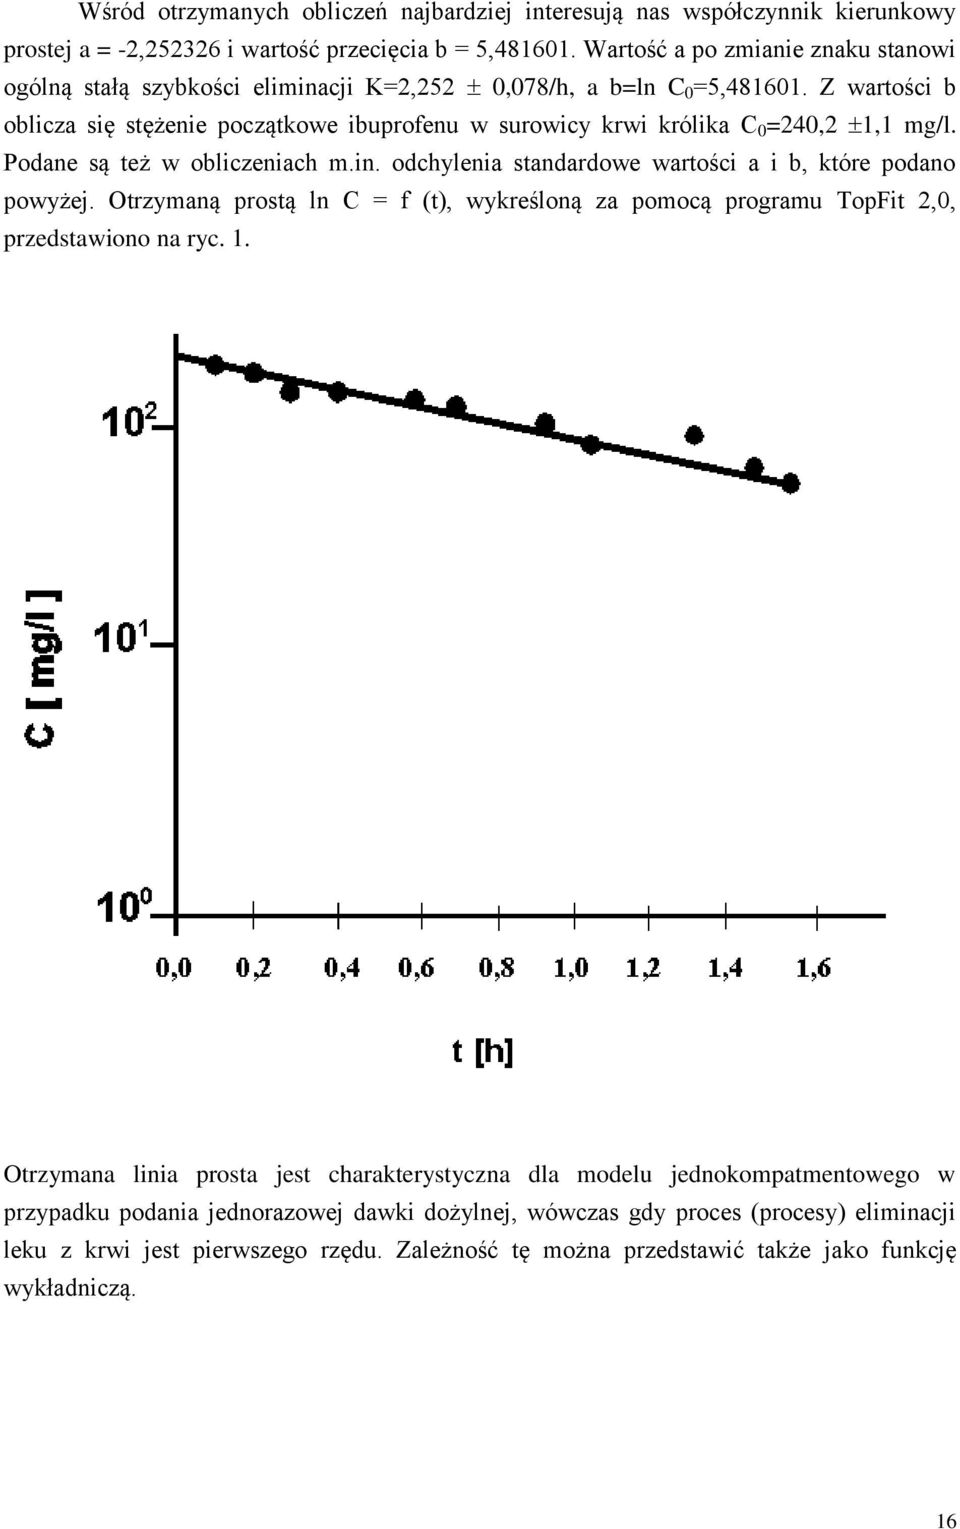 Z wartości b oblicza się stężenie początkowe ibuprofenu w surowicy krwi królika 0 =240,2 1,1 mg/l. Podane są też w obliczeniach m.in. odchylenia standardowe wartości a i b, które podano powyżej.